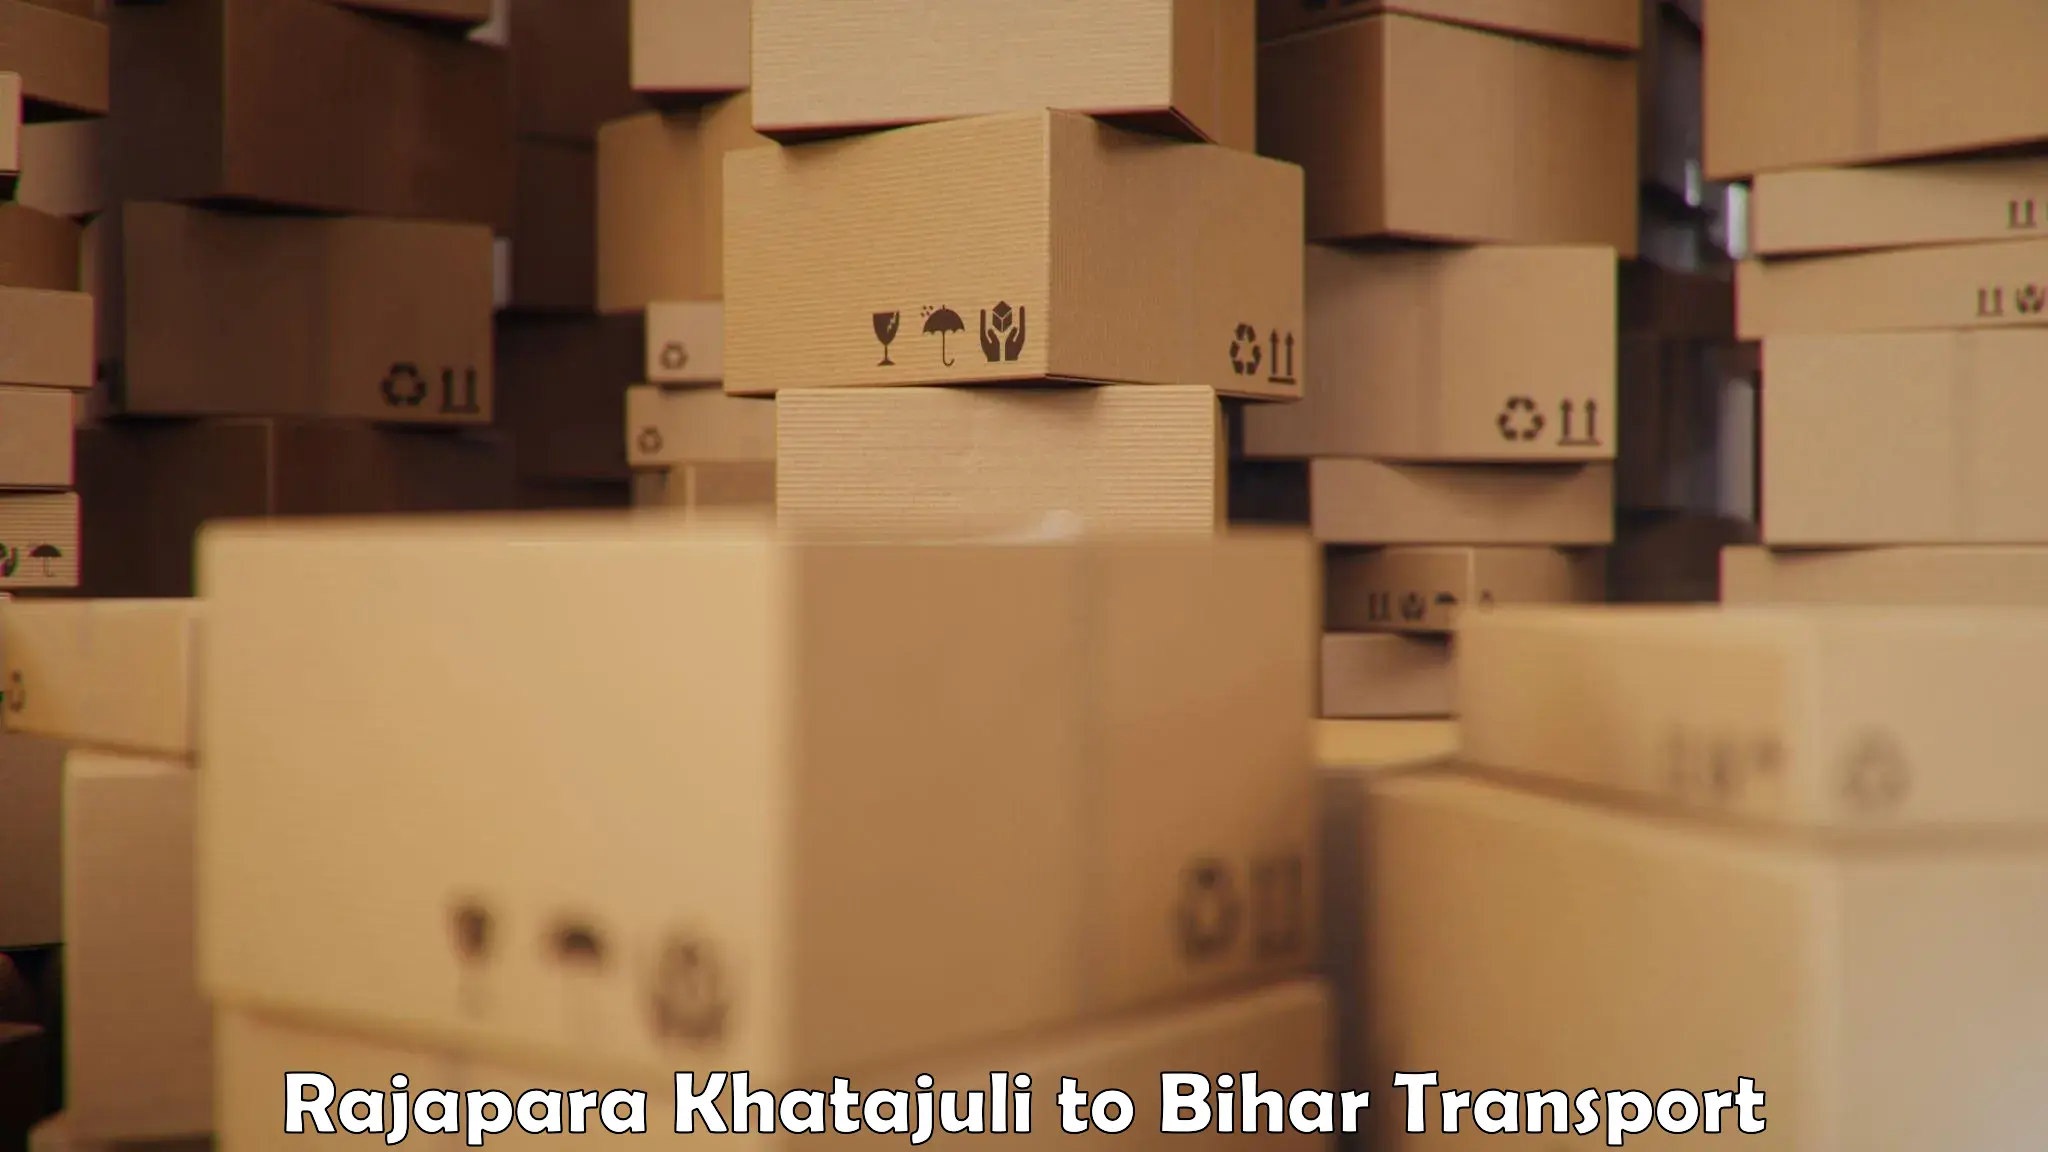 Daily parcel service transport Rajapara Khatajuli to Tajpur Samastipur